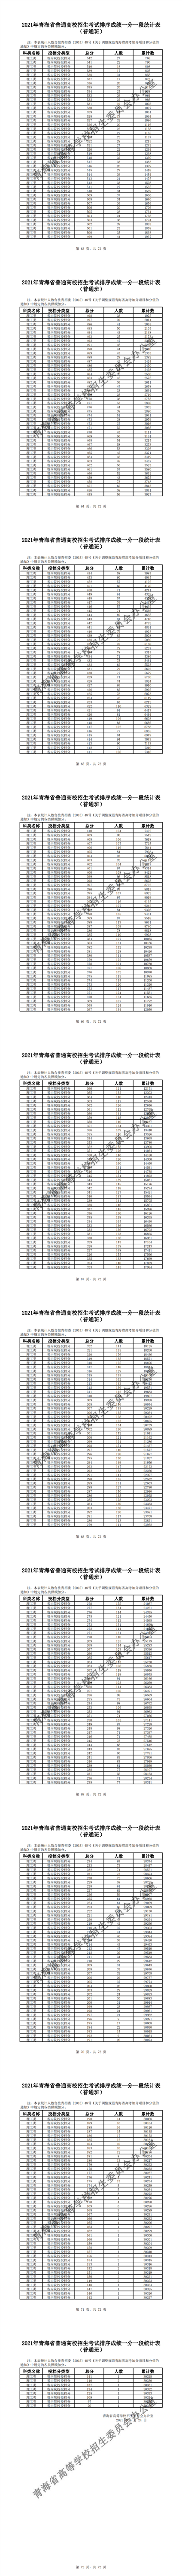 附件1：2021年青海省普通高校招生考试排序成绩一分一段统计表（普通班）_3.png